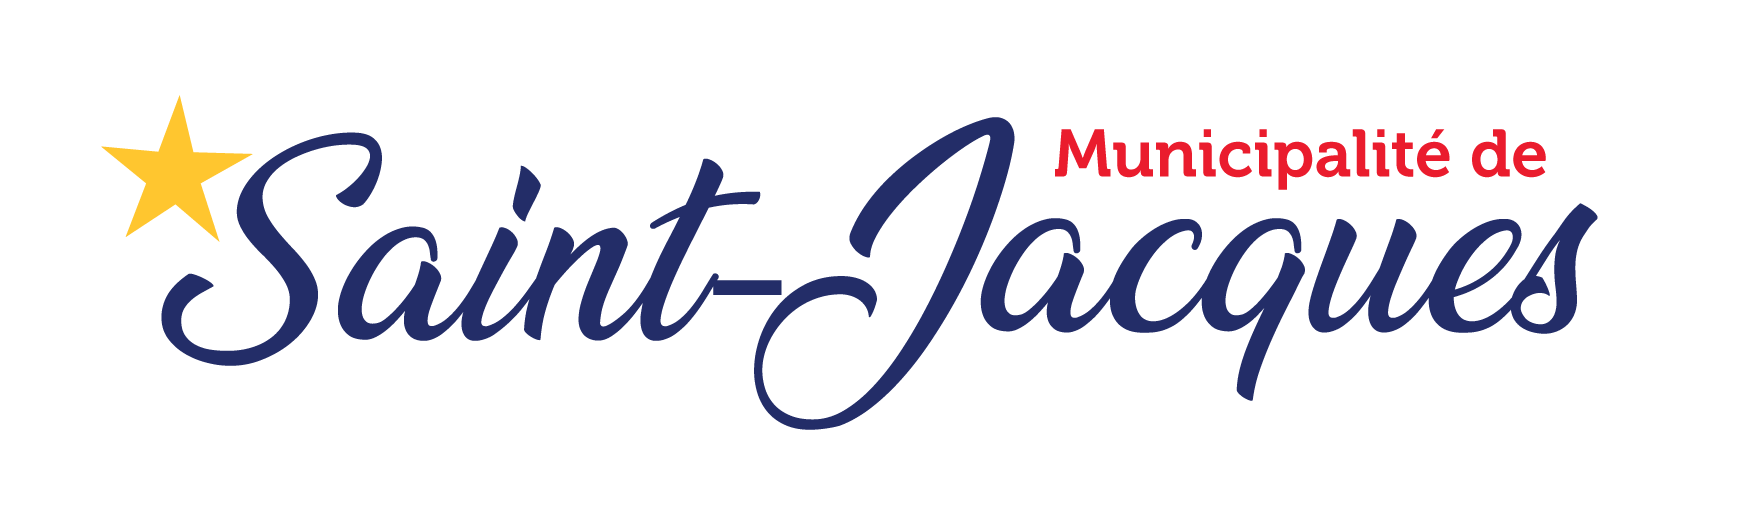 Municipalité de Saint-Jacques